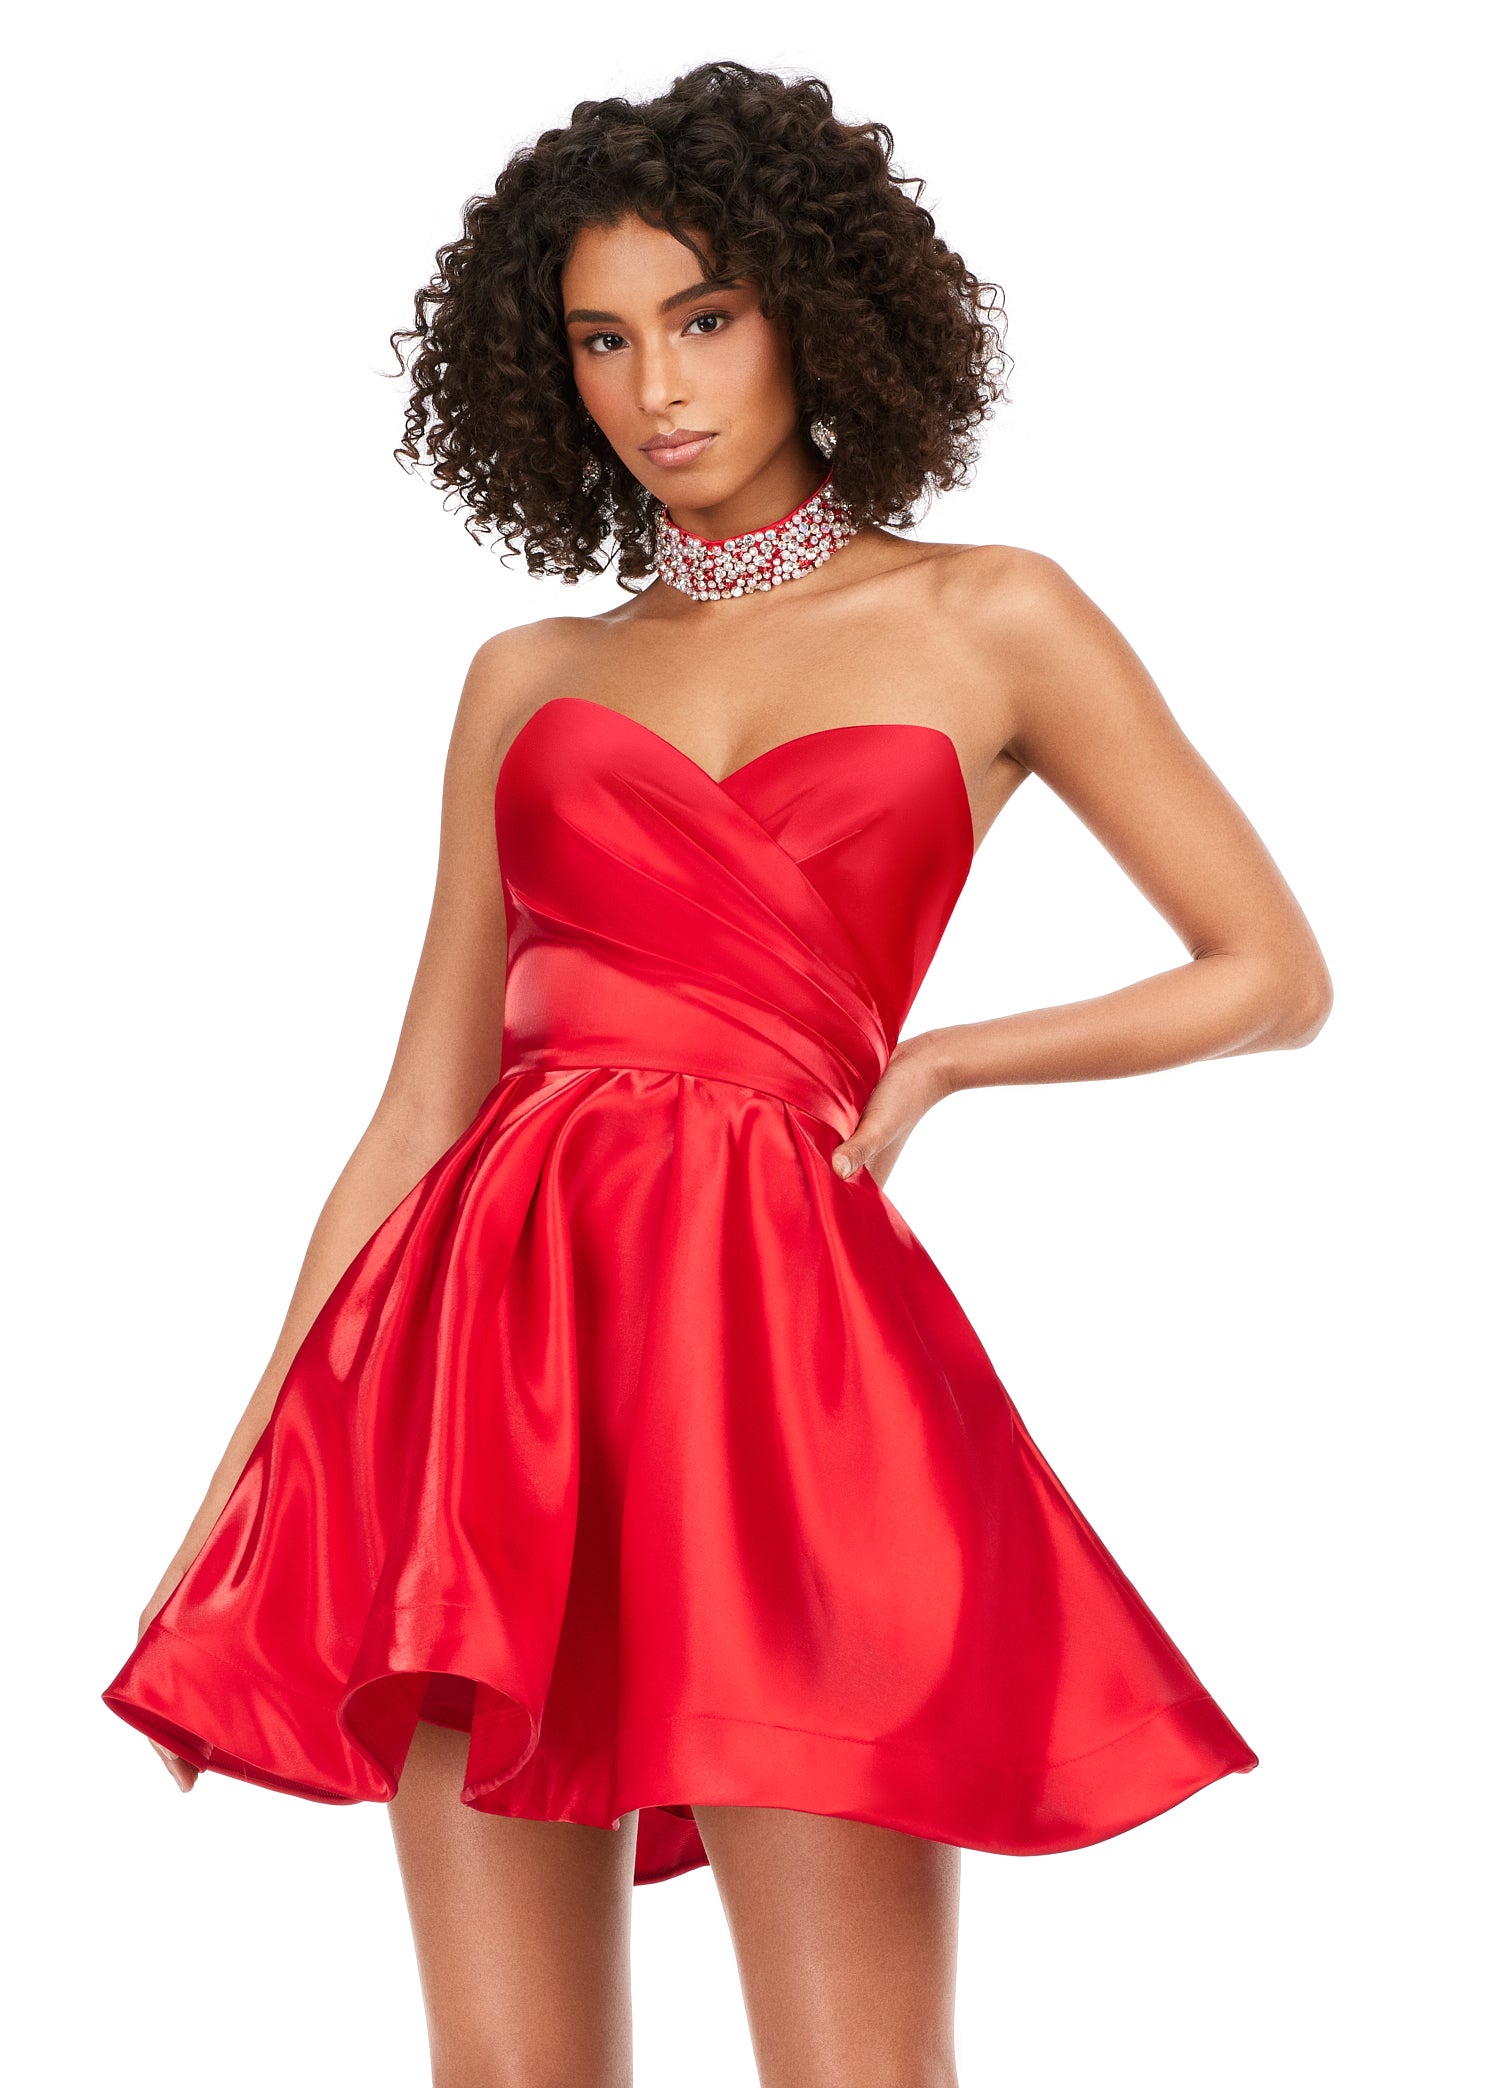 Ashley Lauren 4644 Strapless Satin A-Line Skirt Fully Beaded Choker  Cocktail Homecoming Dress